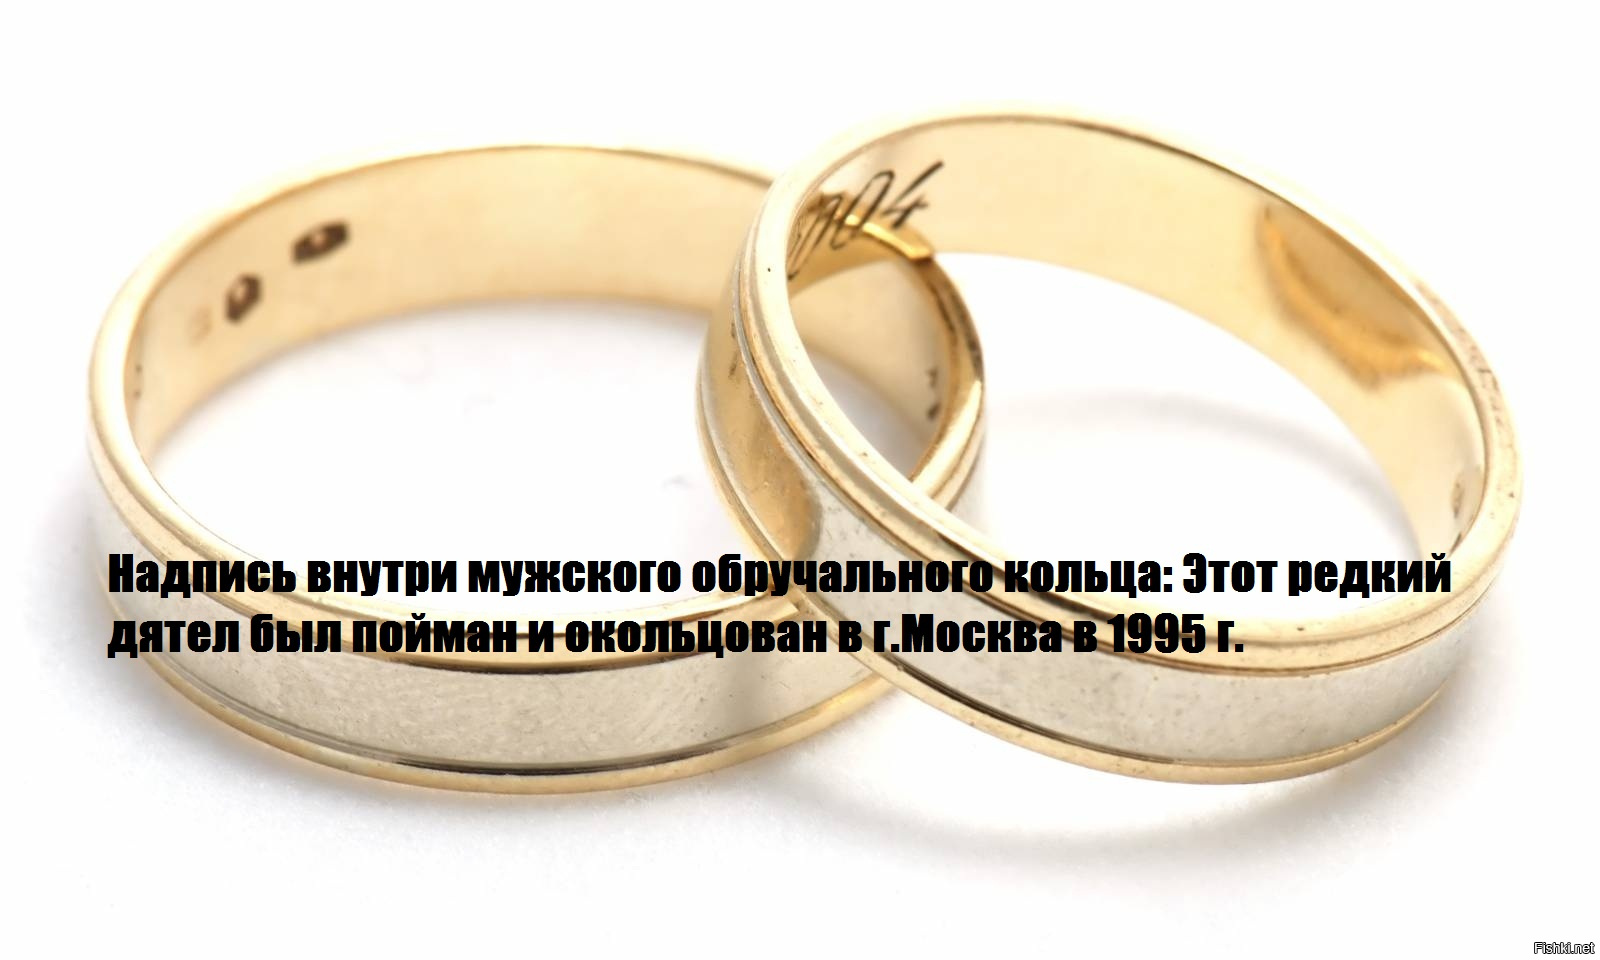 У как у кольца нет конца. Кольцо с надписью. Надписи на обручальных кольцах. Православные надписи на кольцах. Надписи на свадебных кольцах.